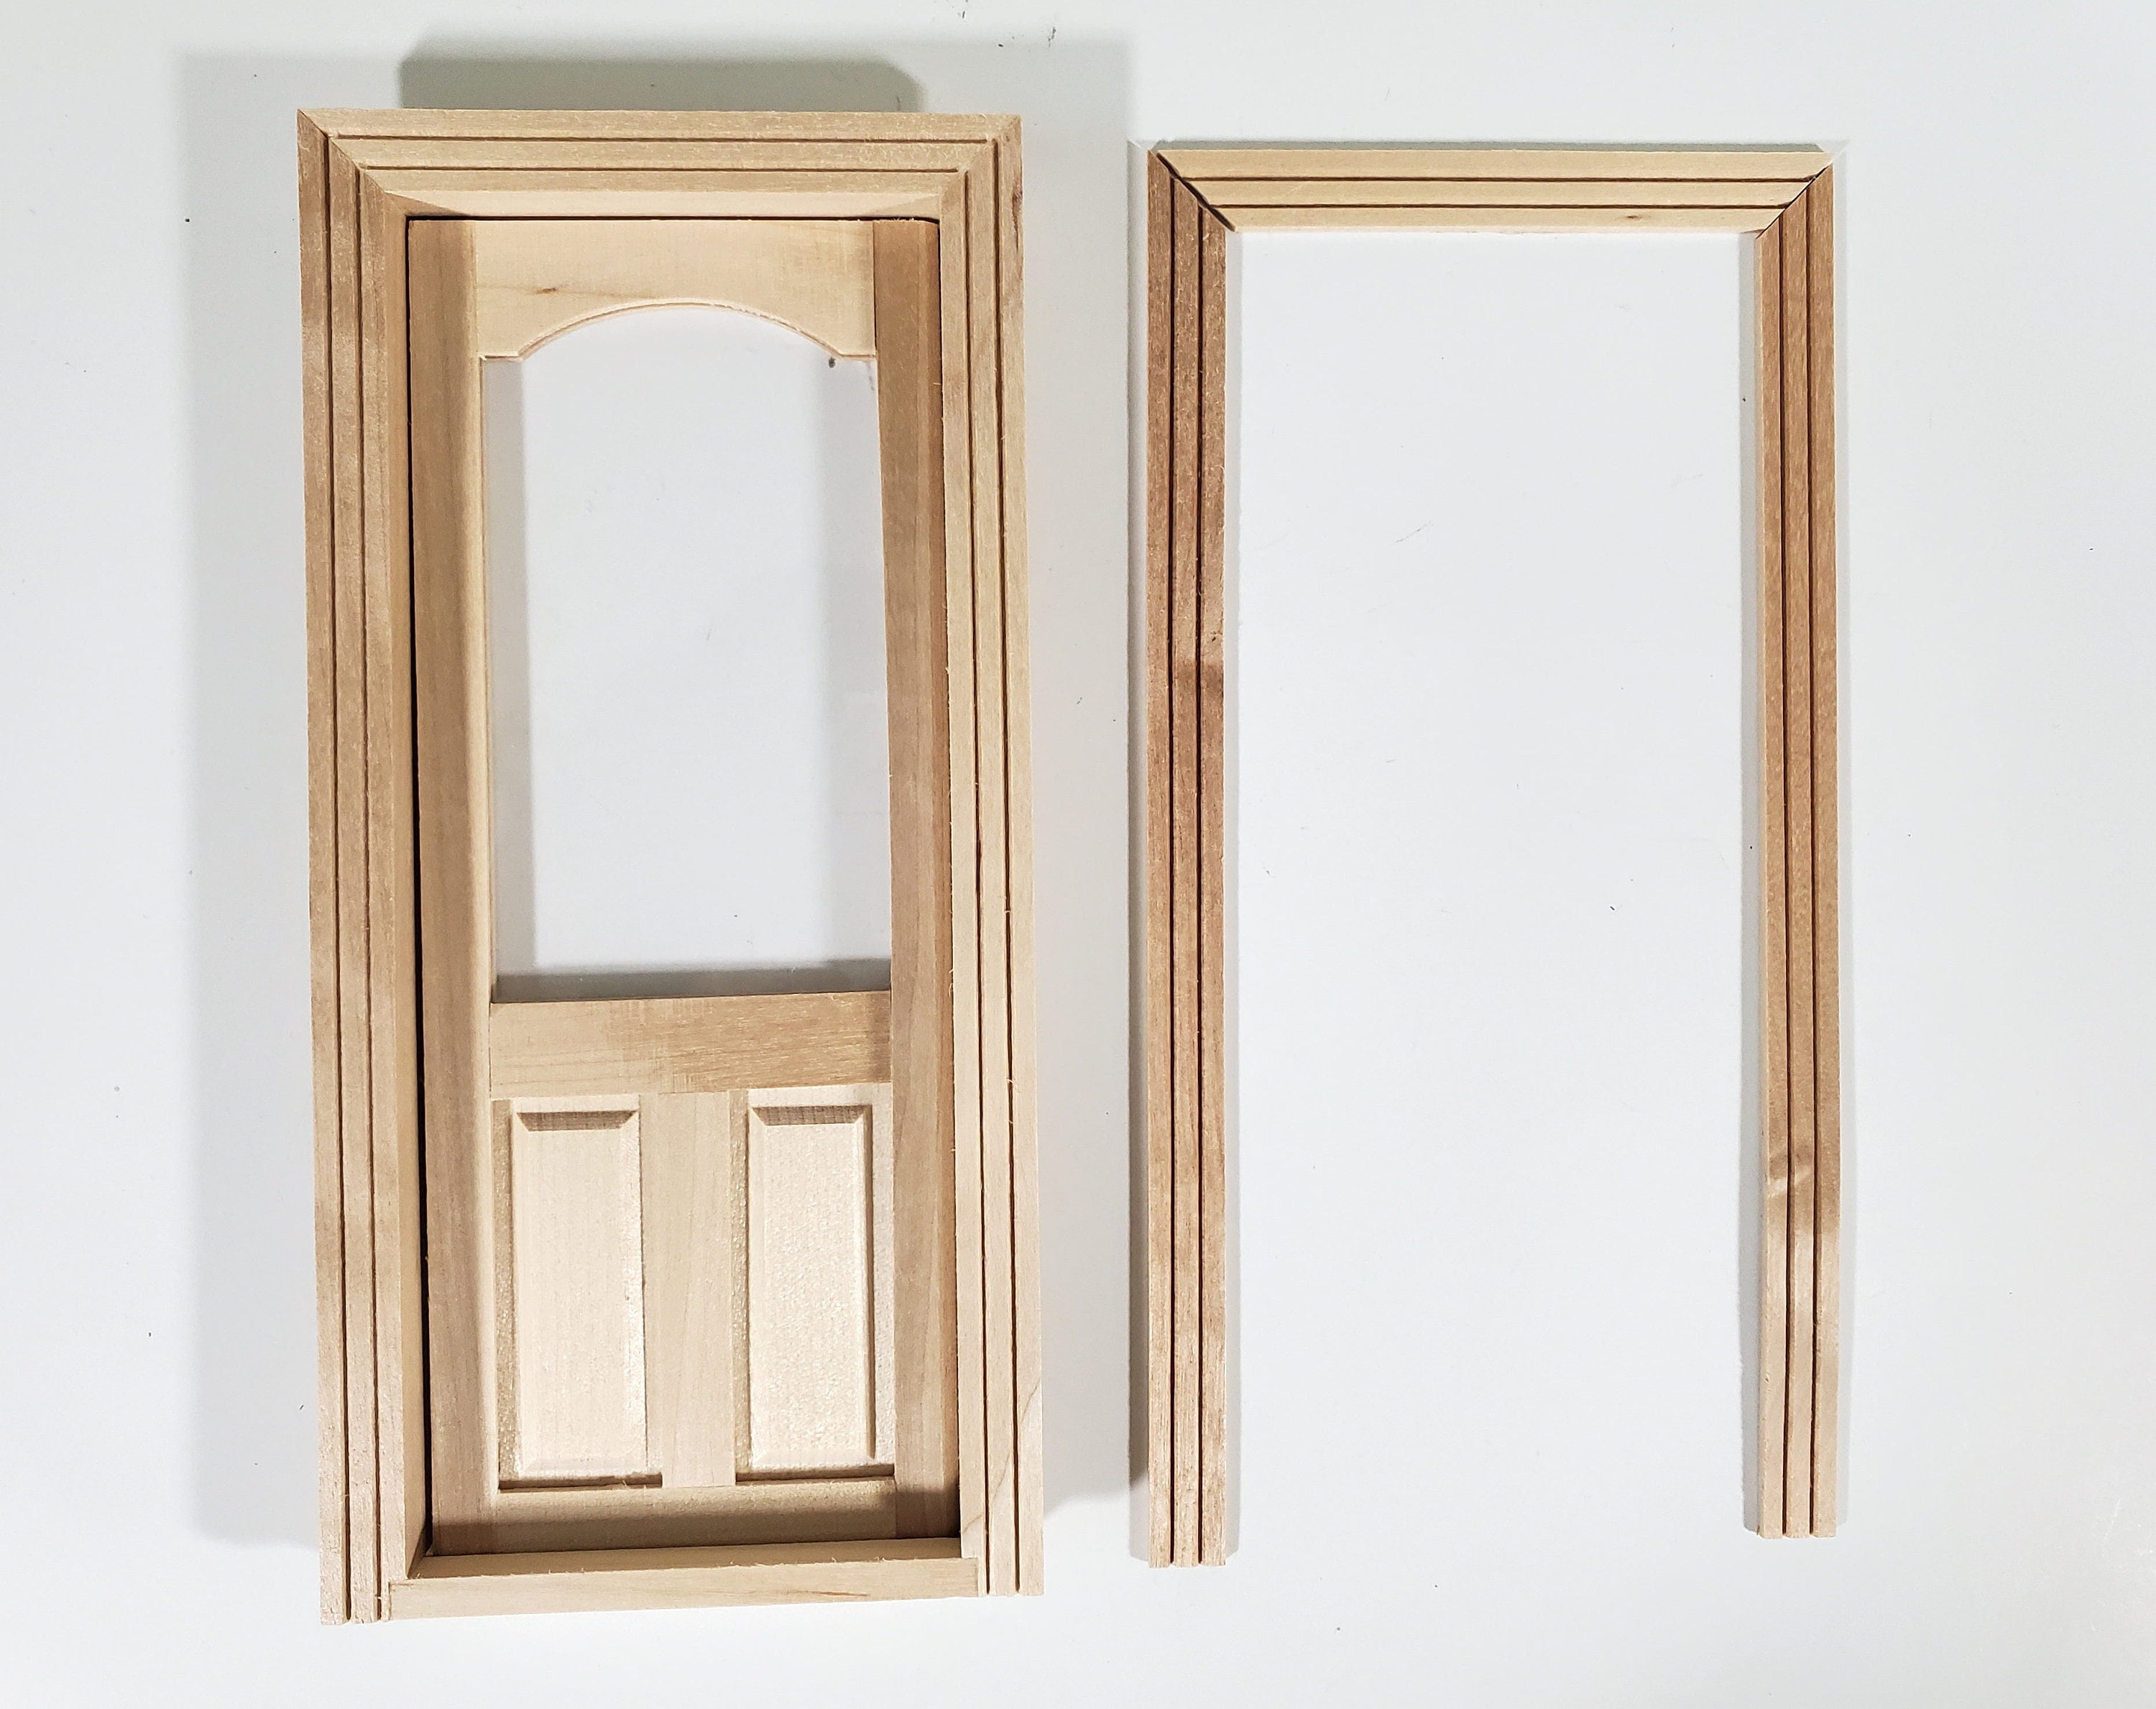 1:12 Dollhouse Saloon Door Panel Swinging Door Frame With 